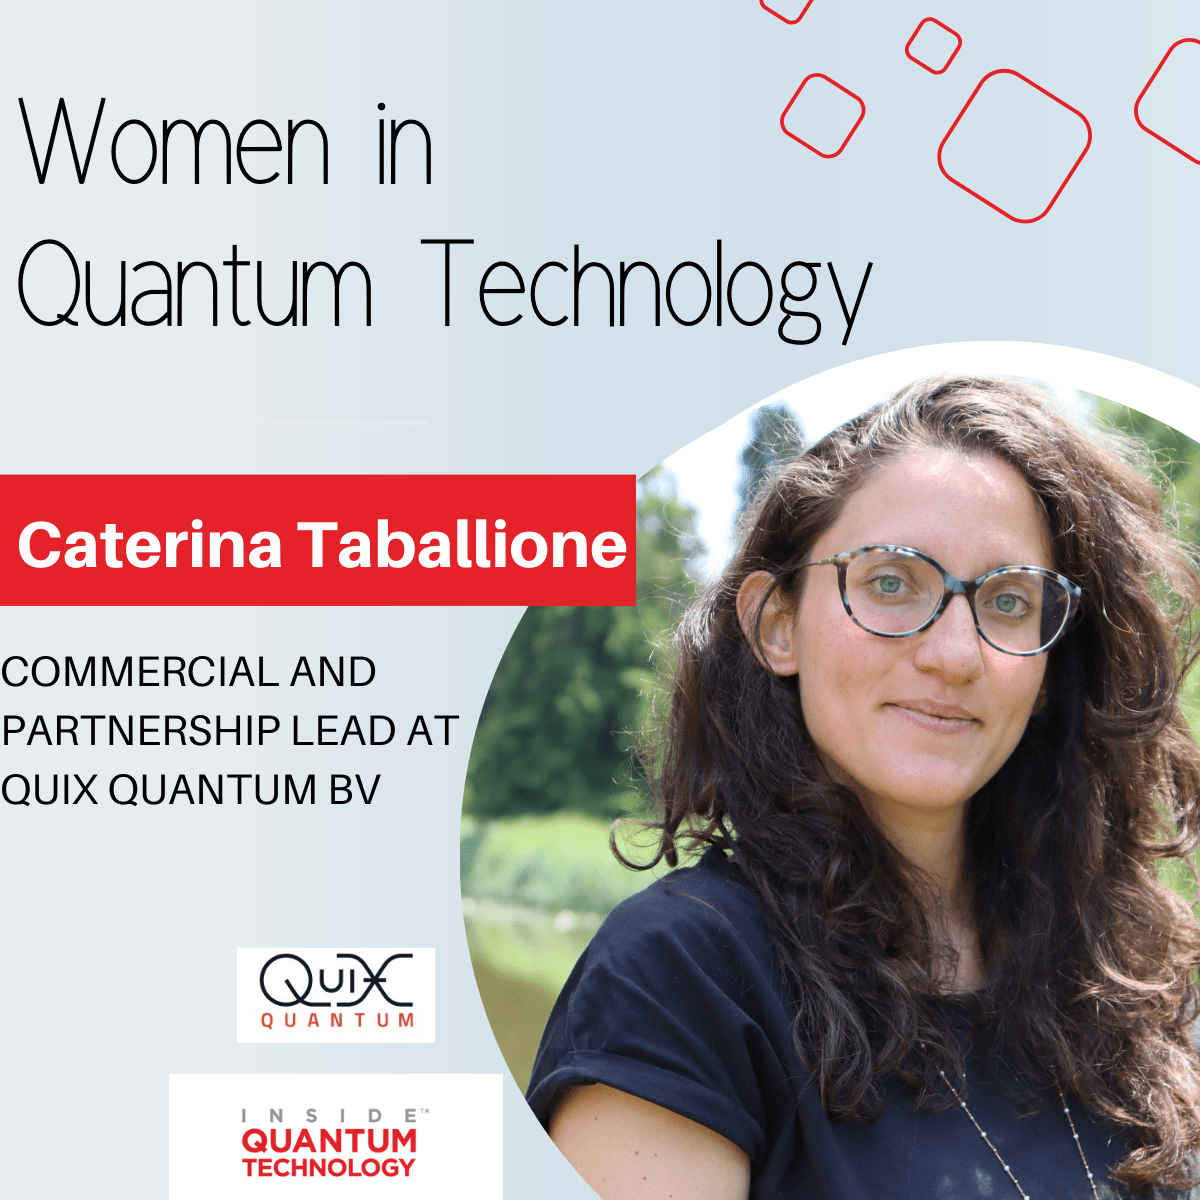 نساء تكنولوجيا الكم: كاترينا تاباليوني من QuiX Quantum BV - داخل تكنولوجيا الكم